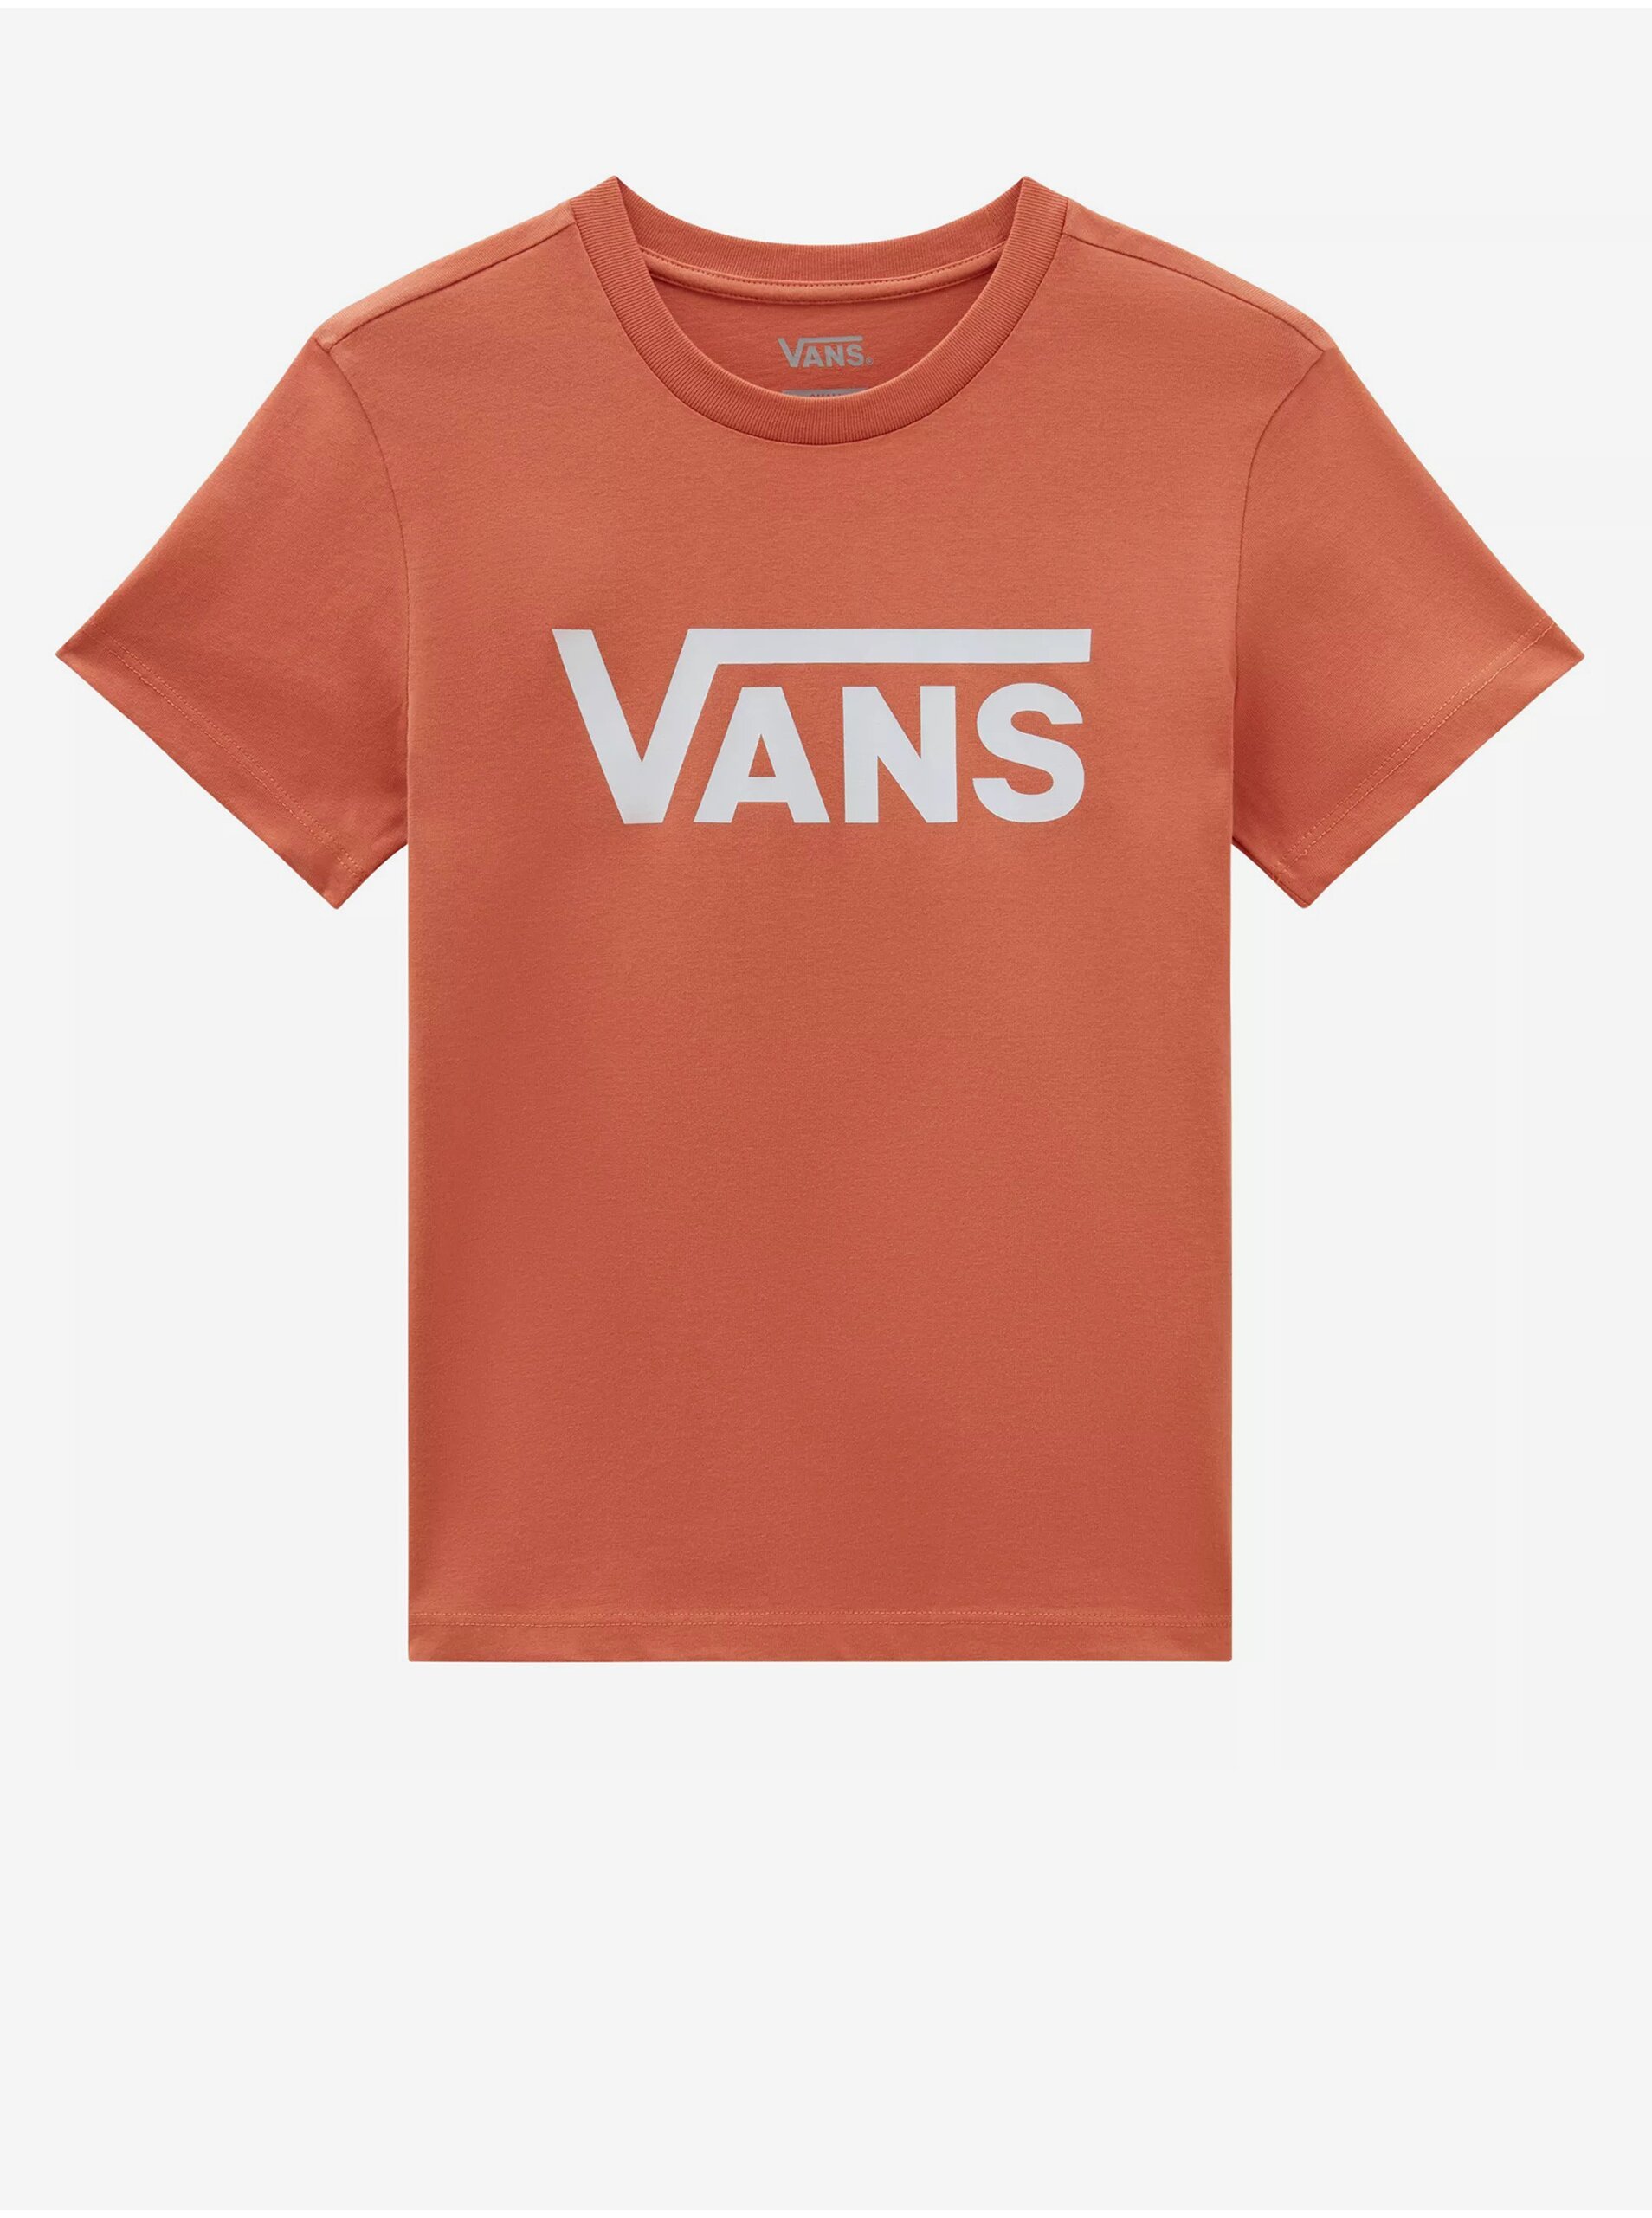 Orange women's T-shirt VANS Flying V - Women